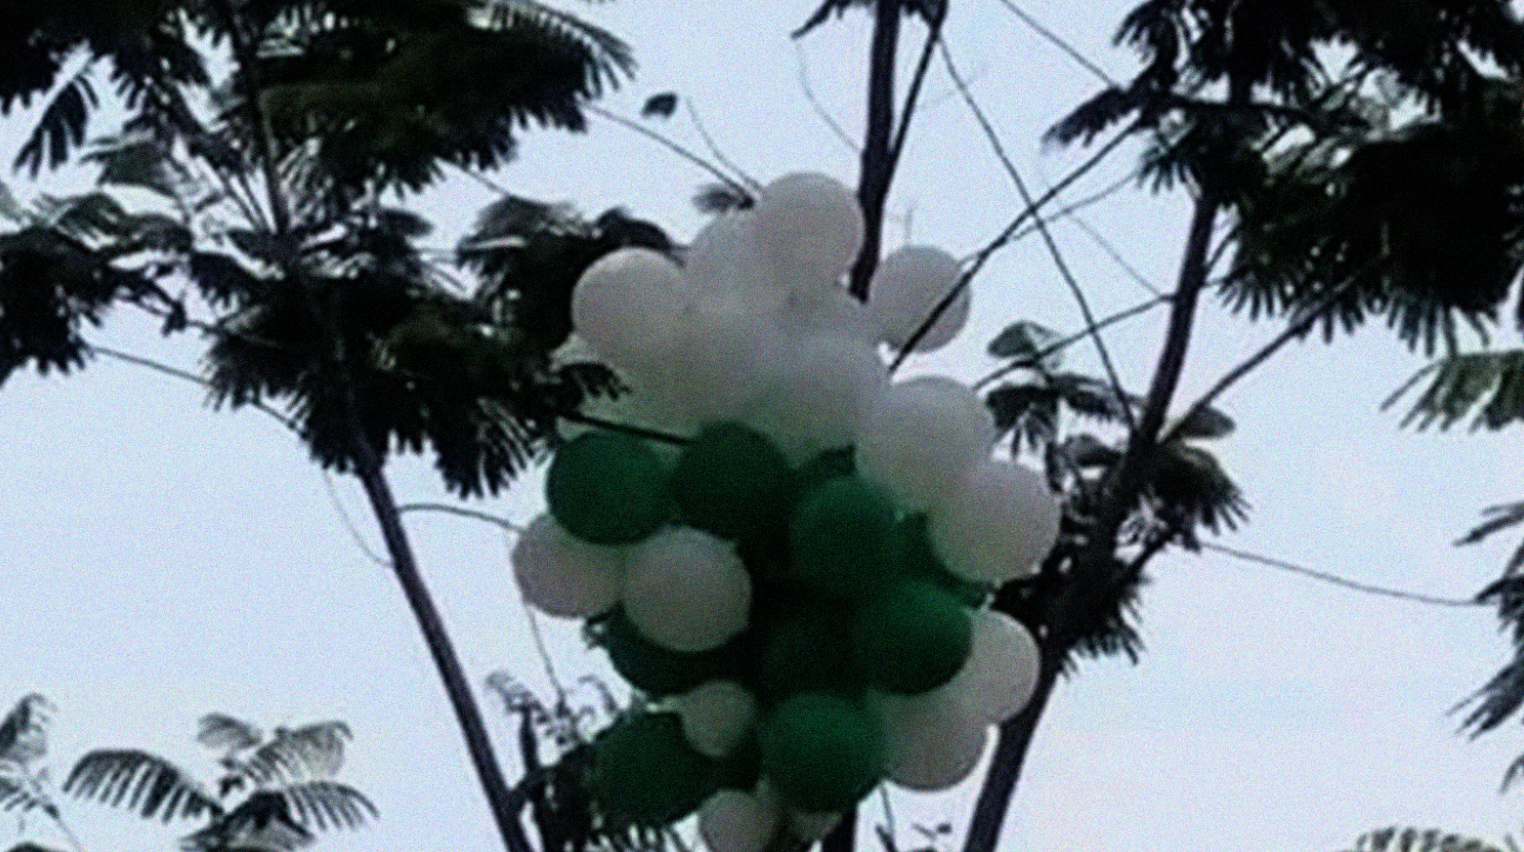 Sekumpulan balon turun dari langit yang menjadi rebutan warga Manggis, Kecamatan Puncu, Kediri. Balon diduga berisi zat kimia yang membakar kulit wajah, tangan, dan tubuh warga yang berebut. (Foto: Istimewa)